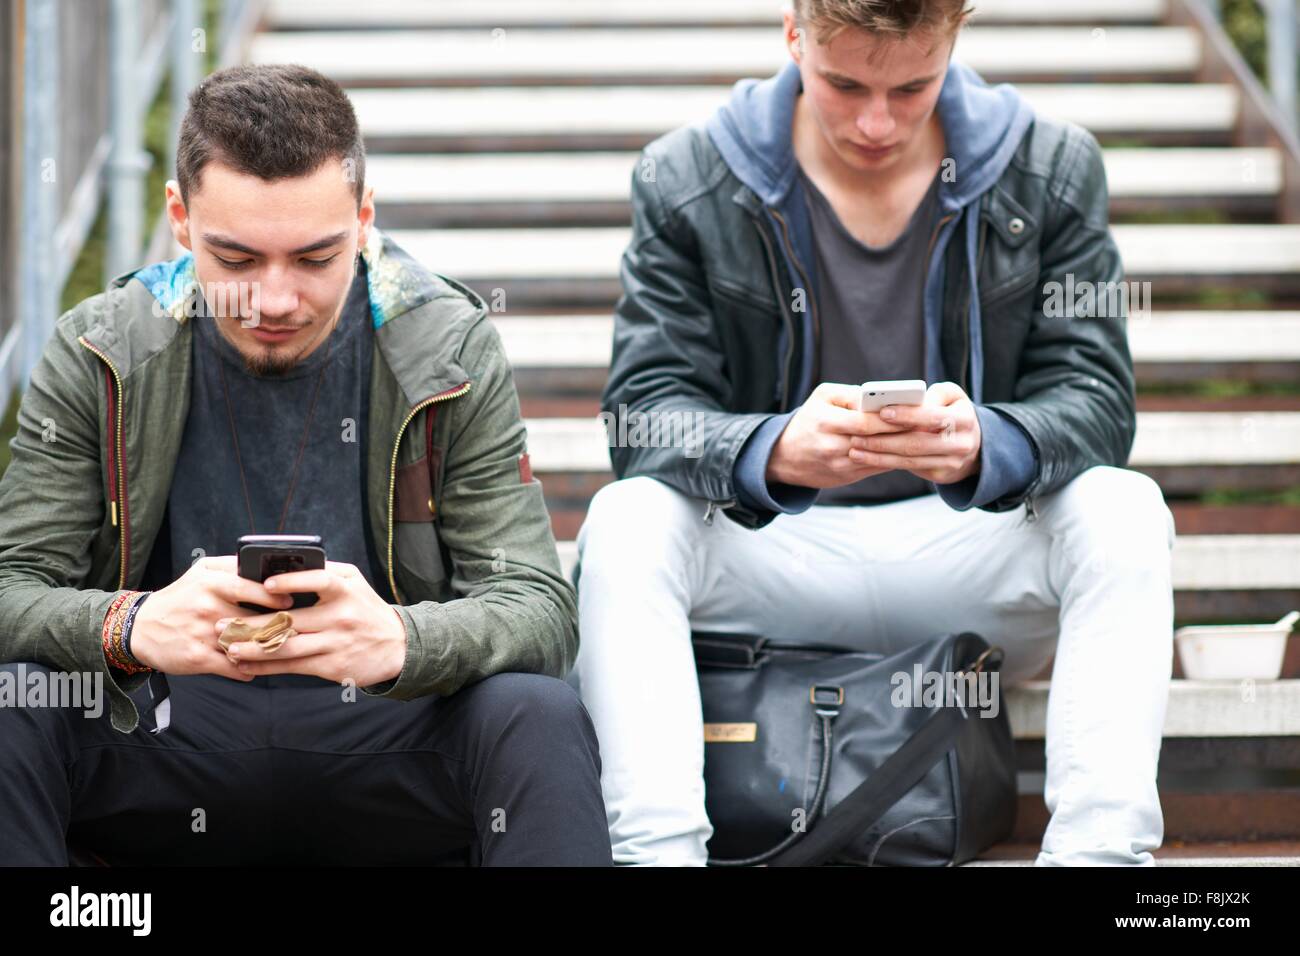 Dos hombres jóvenes, sentados en pasos, utilizando smartphones, al aire libre Foto de stock